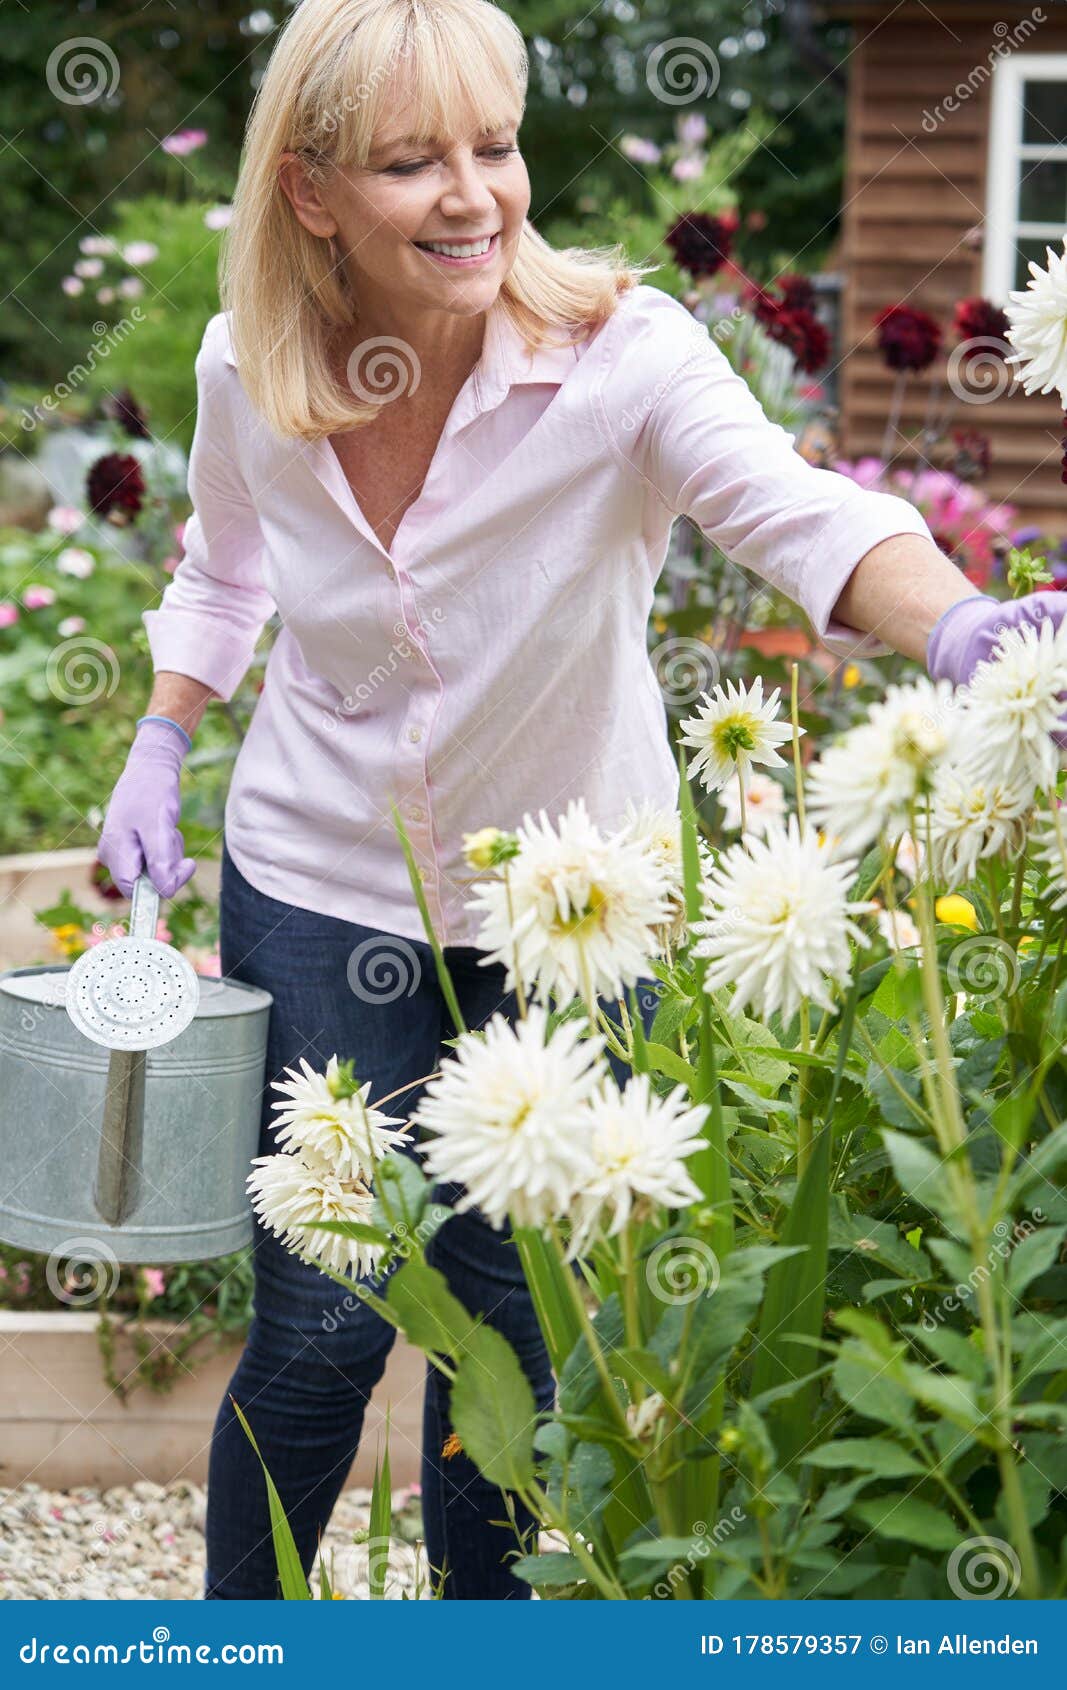 Зрелая женщина работает в саду :: Стоковая фотография :: Pixel-Shot Studio